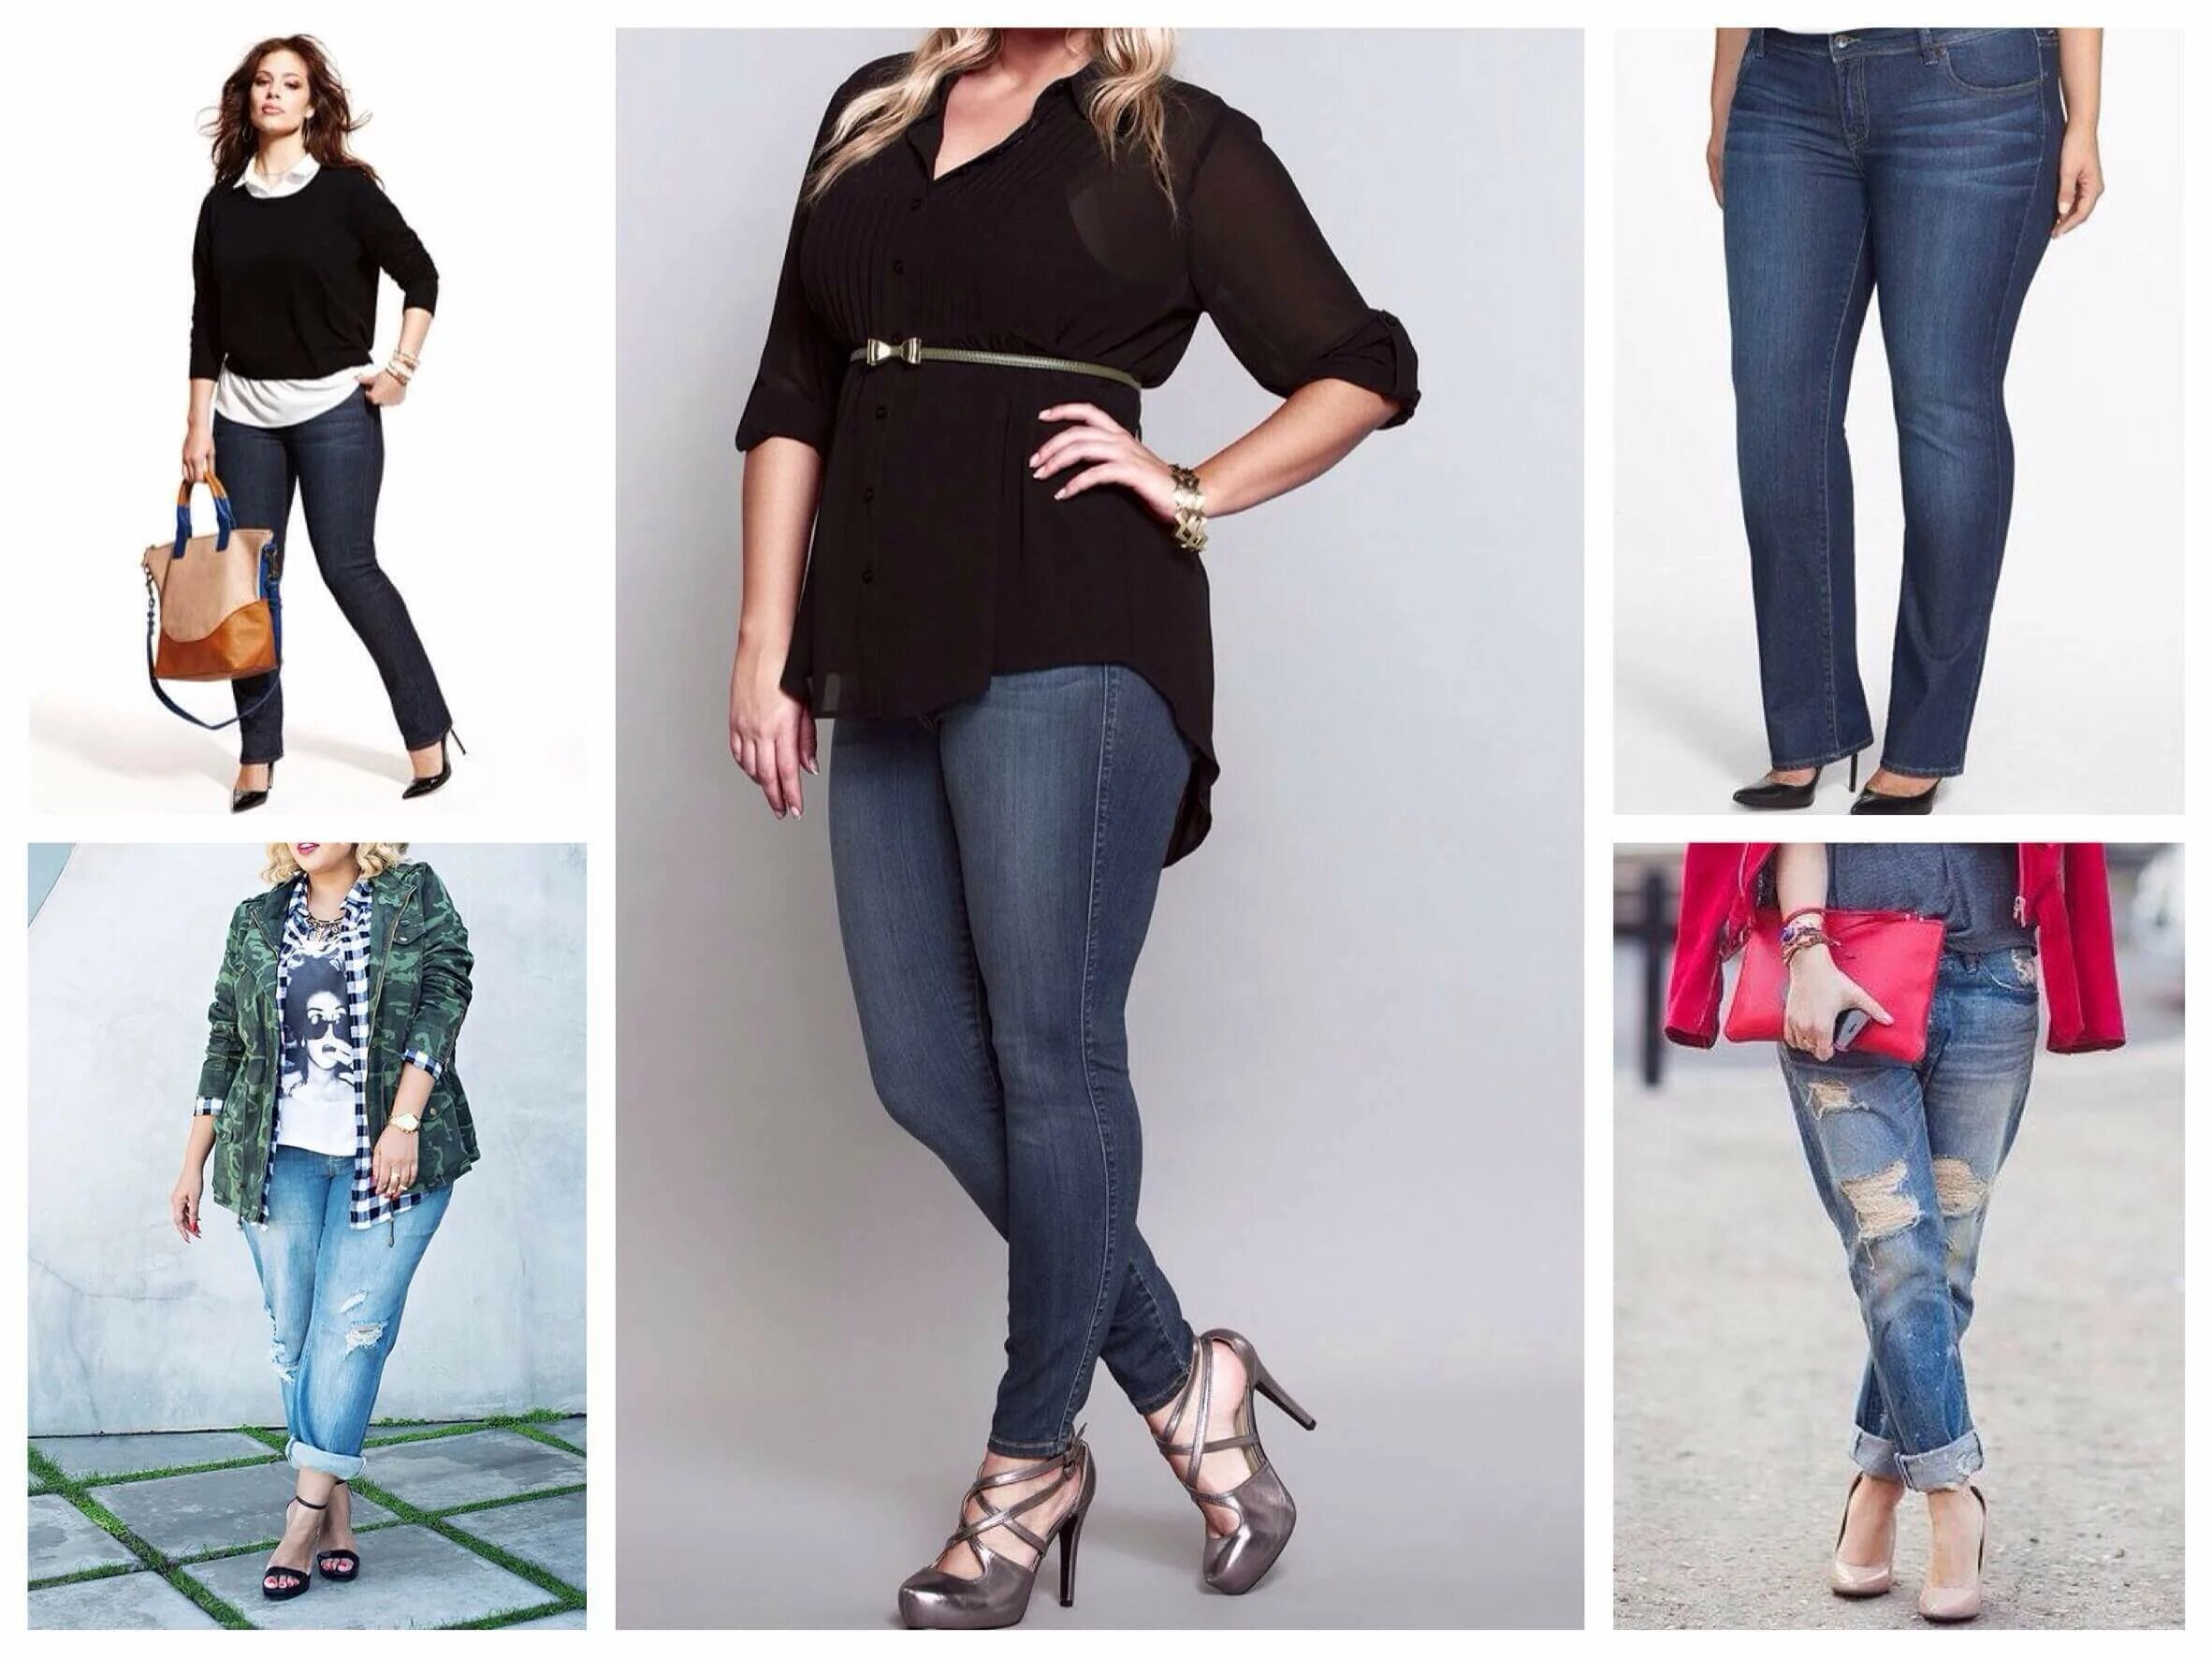 Большой живот и худые ноги. Узкие джинсы на полных девушек. Джинсы для фигуры яблоко. Фигура в джинсах. Модные образы для полных девушек.